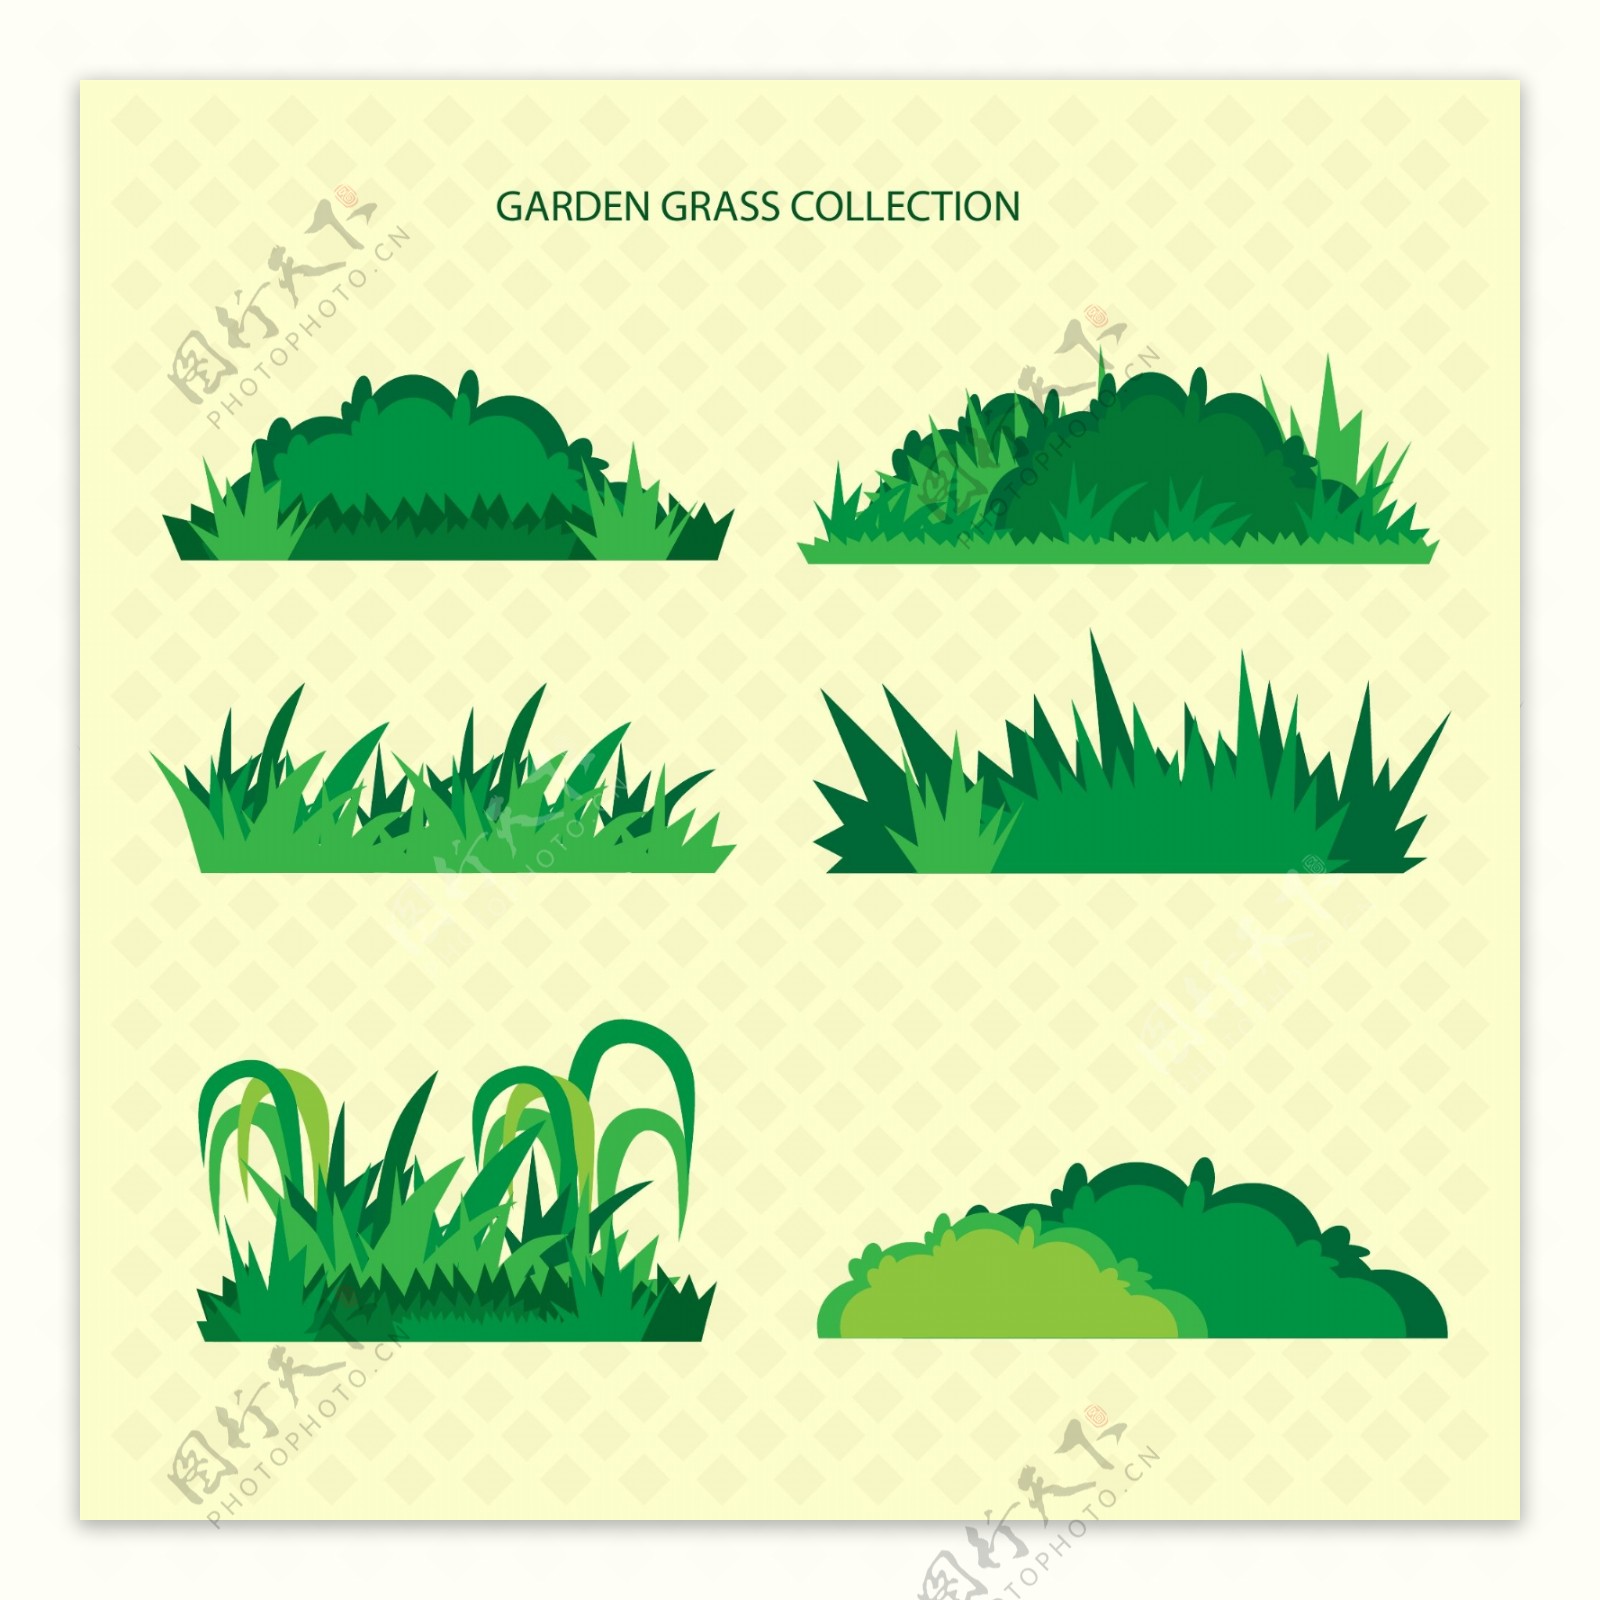 6款绿色草地设计矢量素材